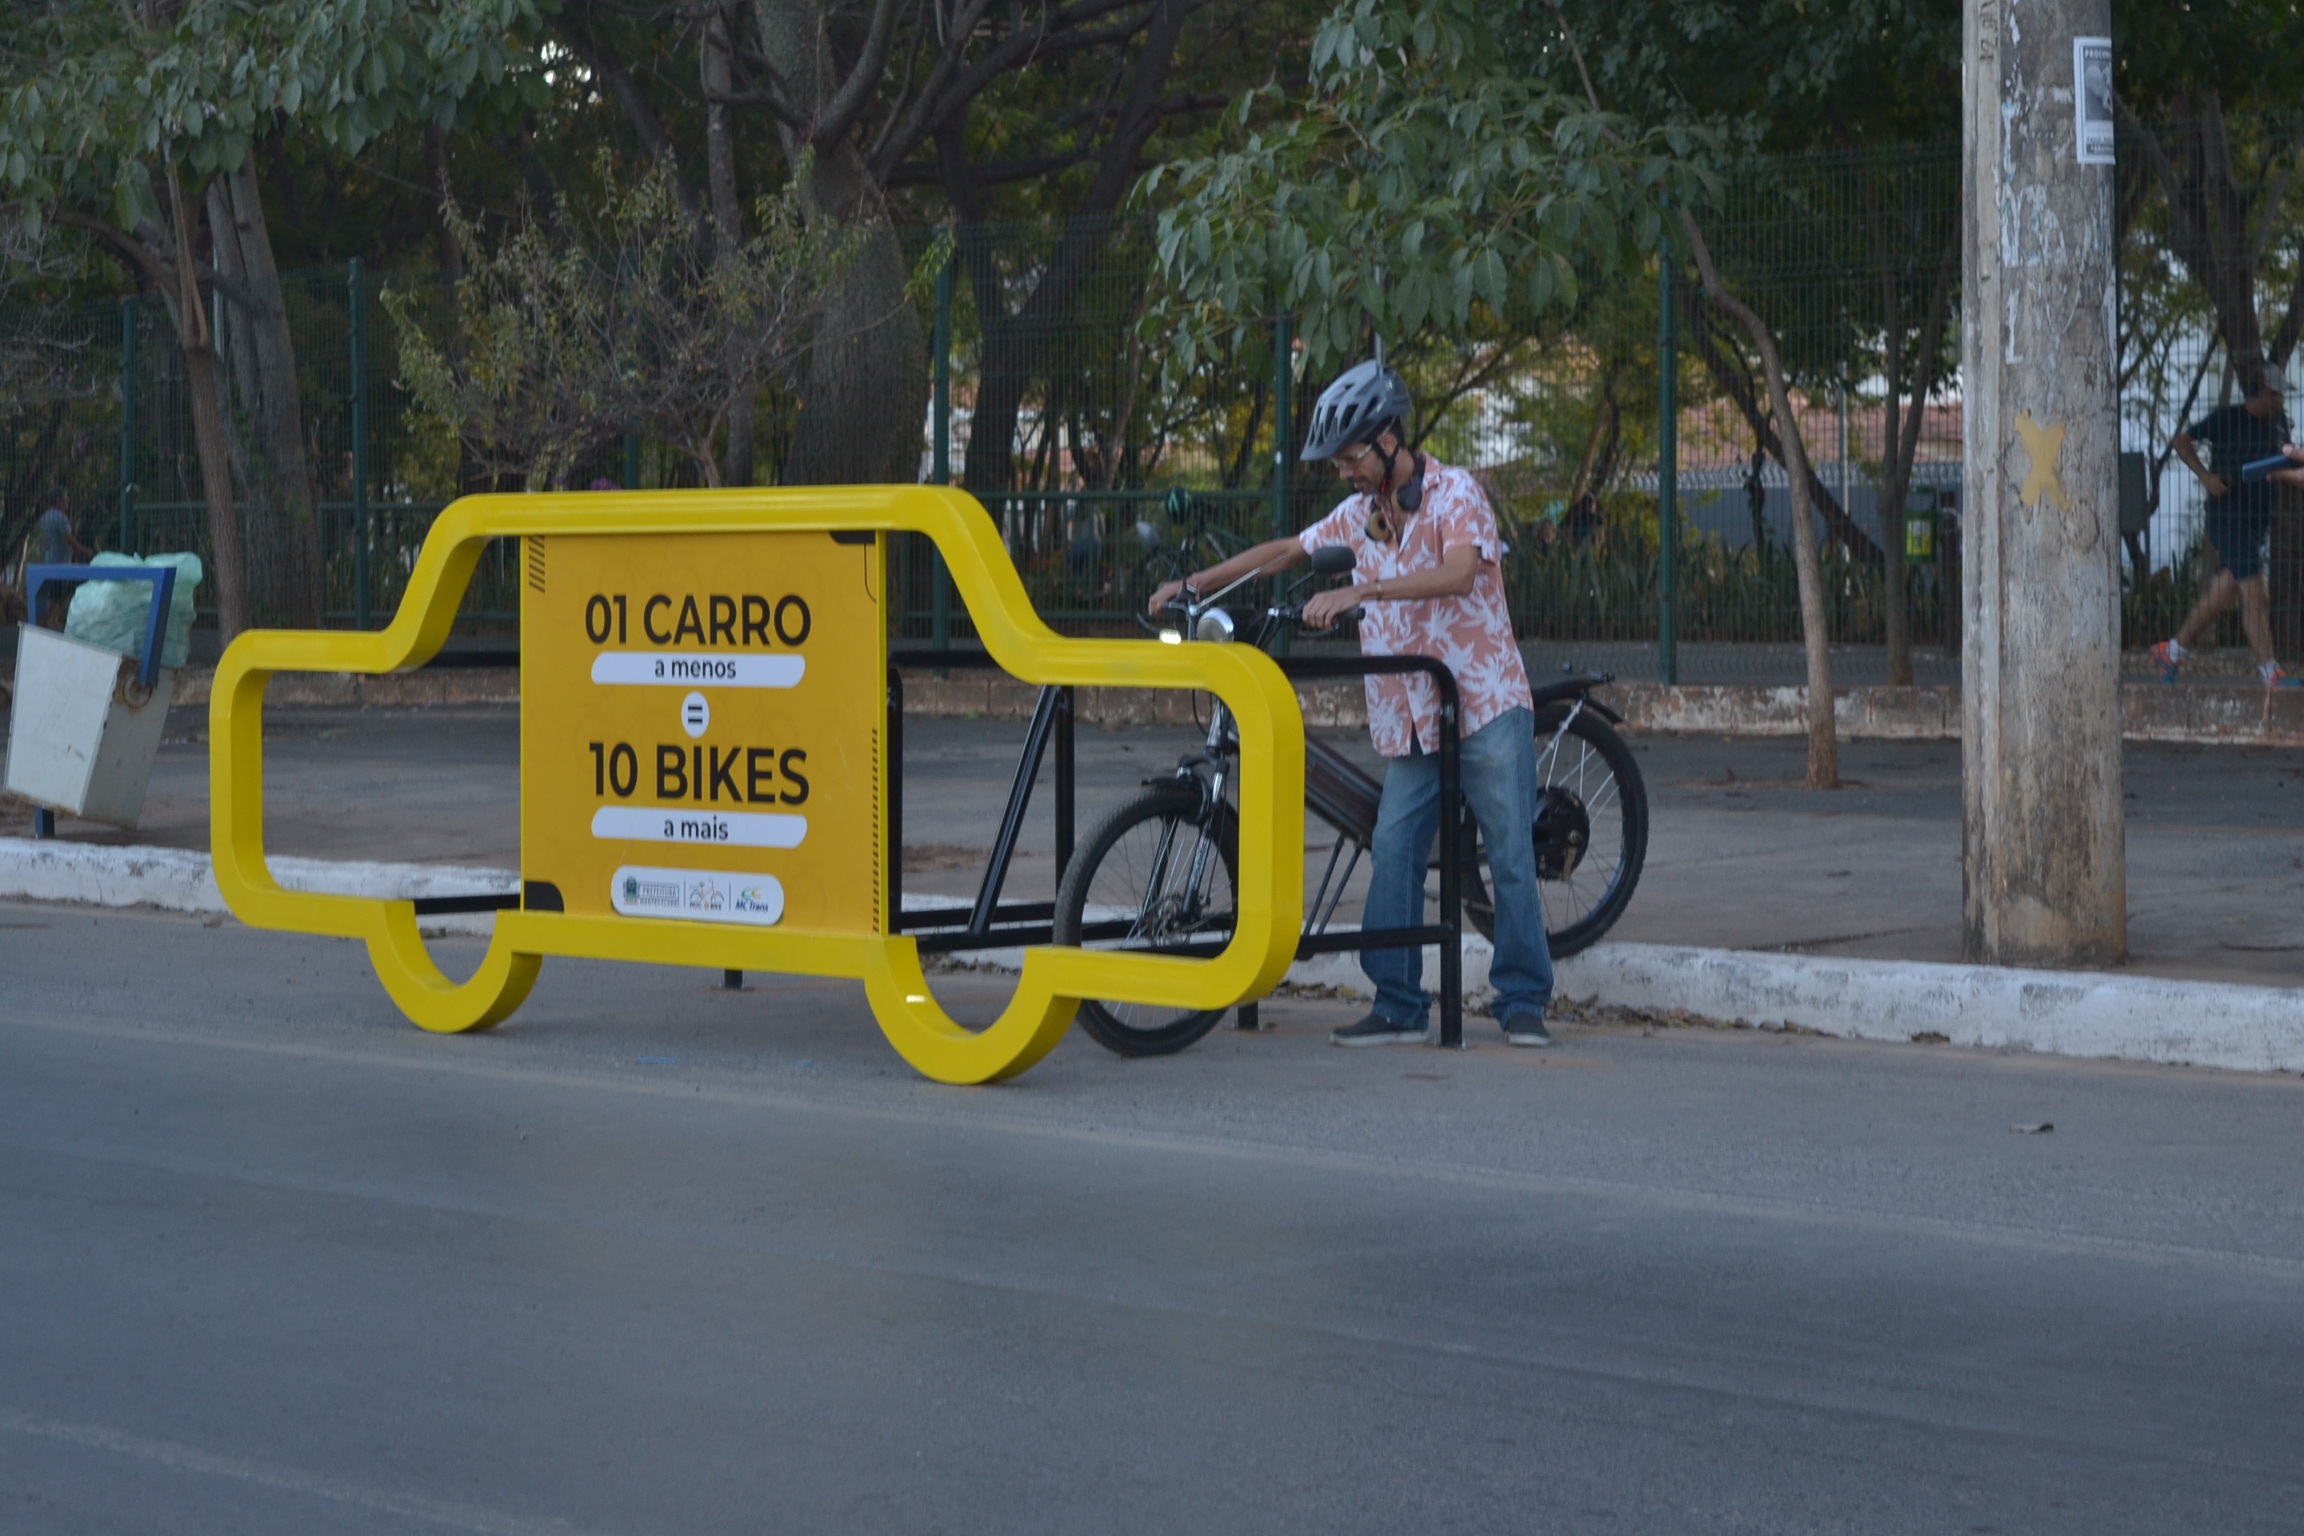 Bicicletários serão implantados em vários pontos de Montes Claros